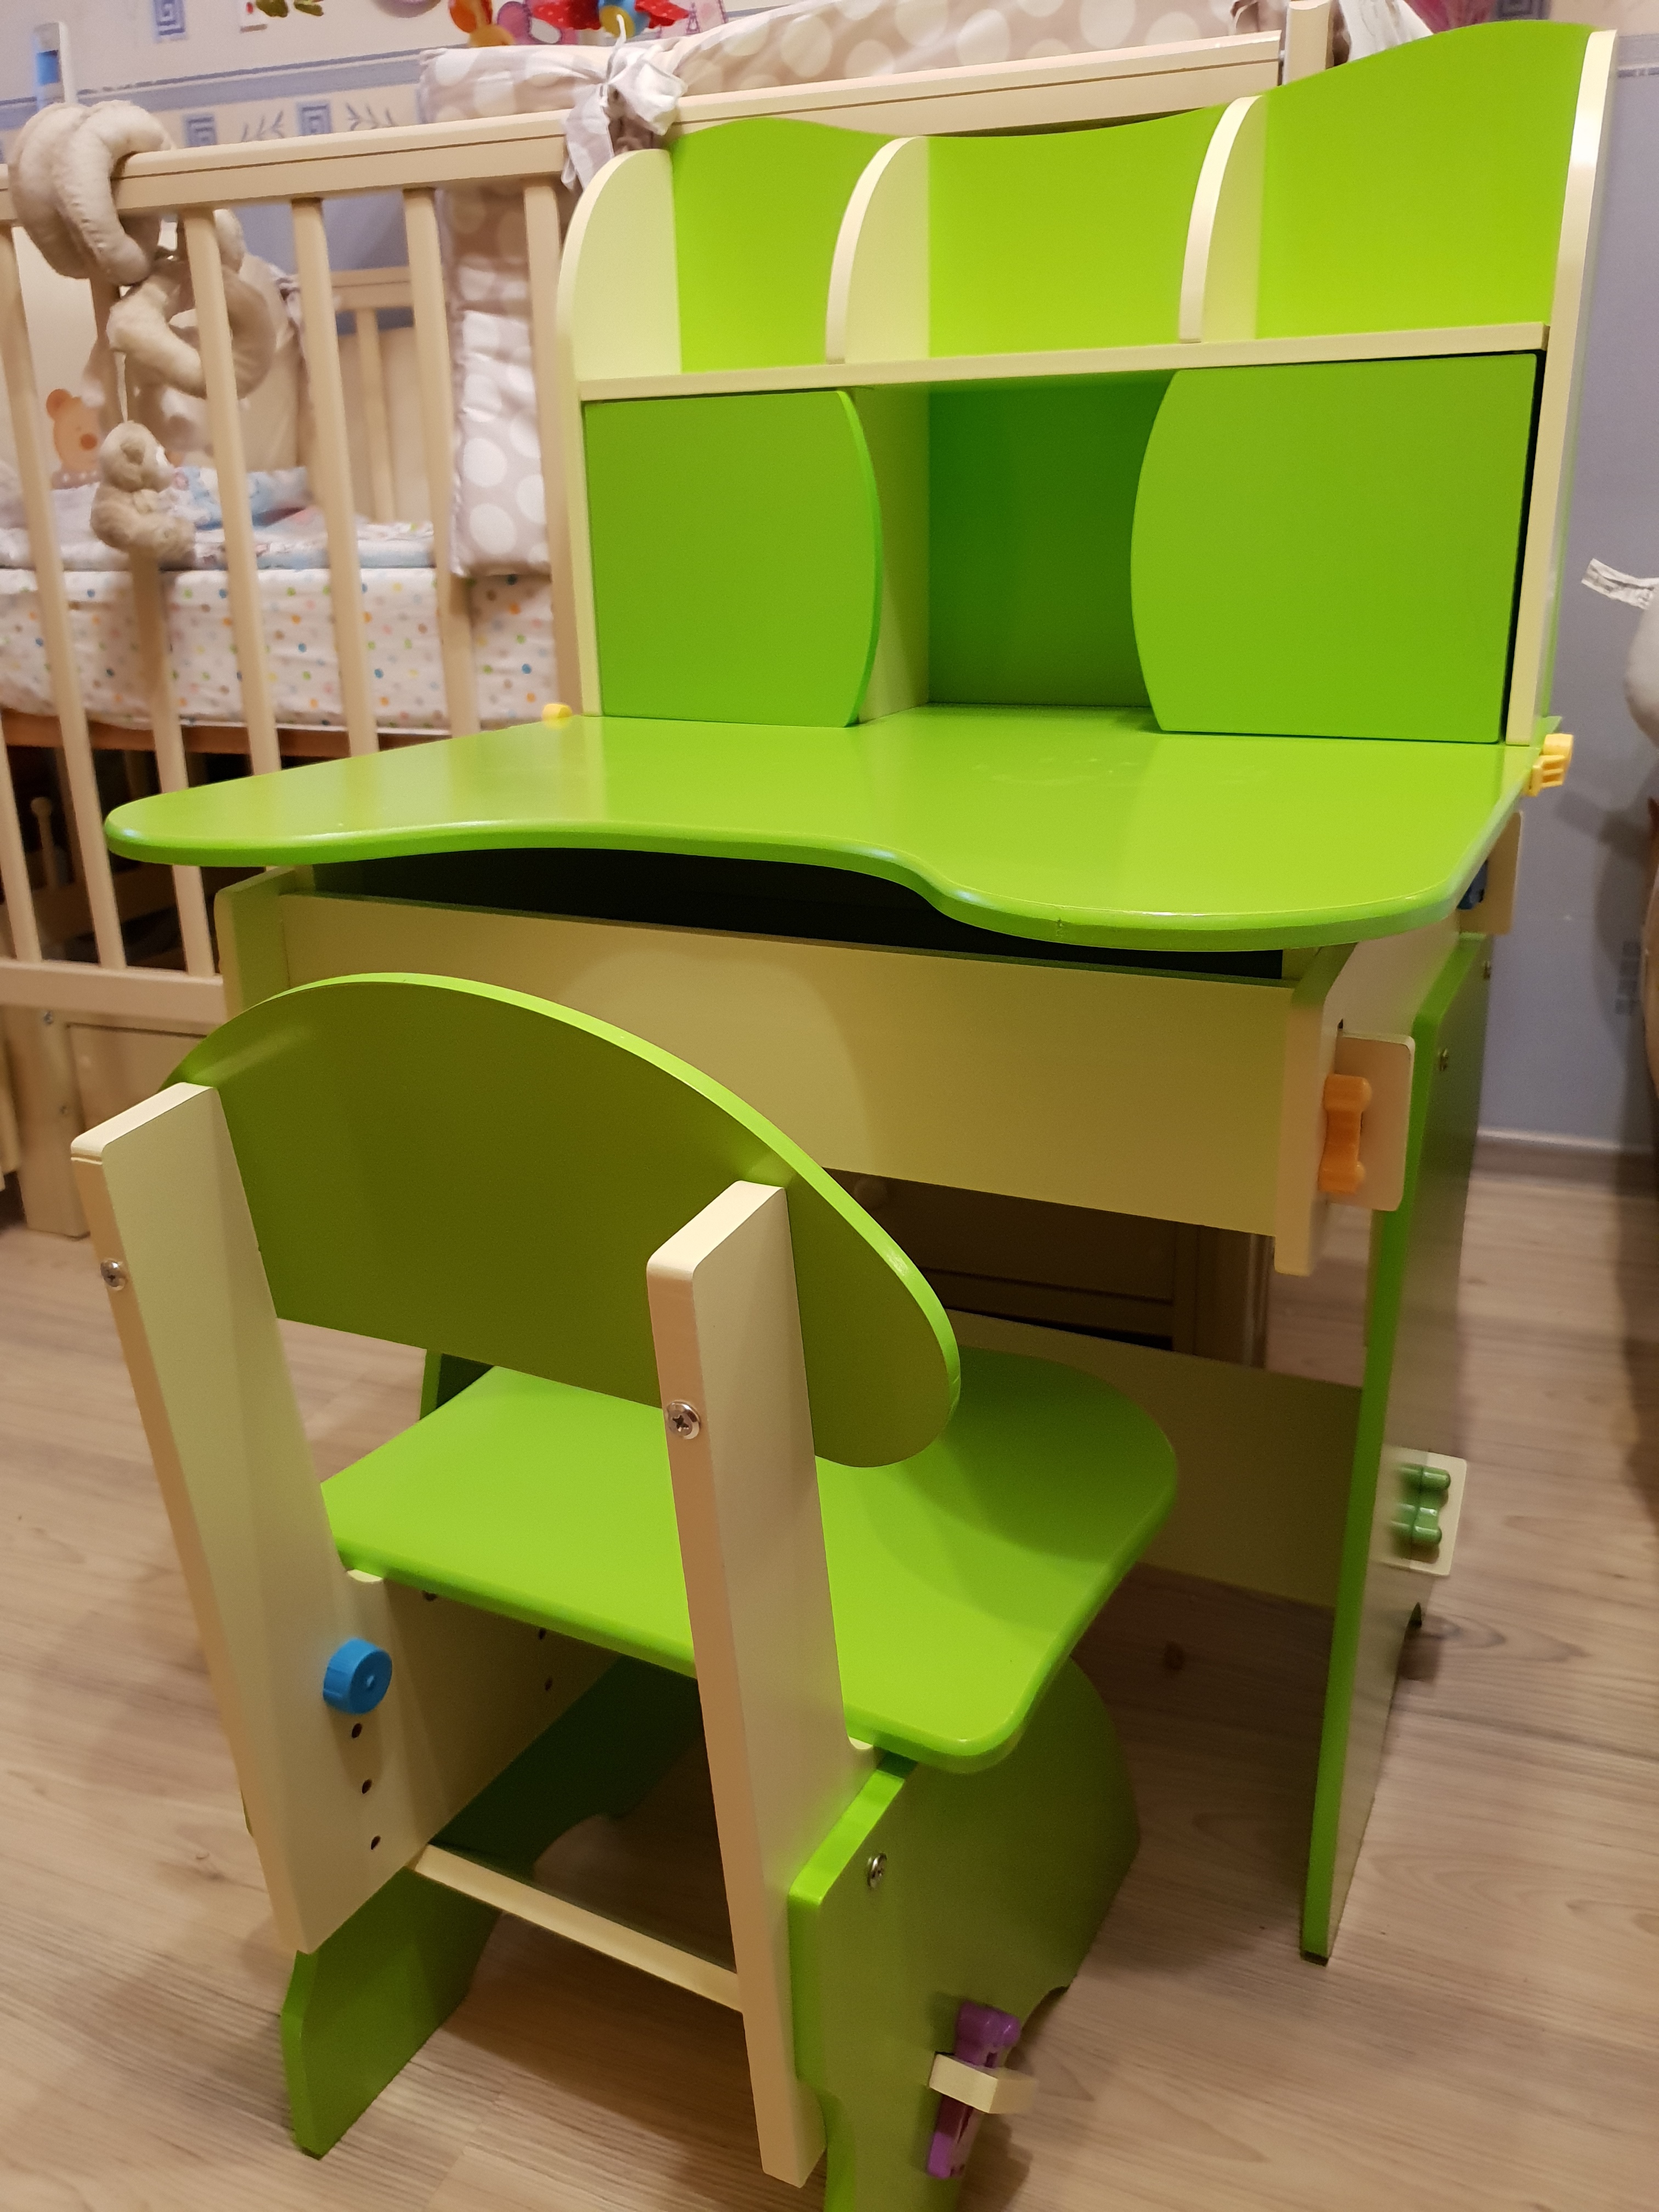 Цена детского столика со стулом в Почепе у Марухленко